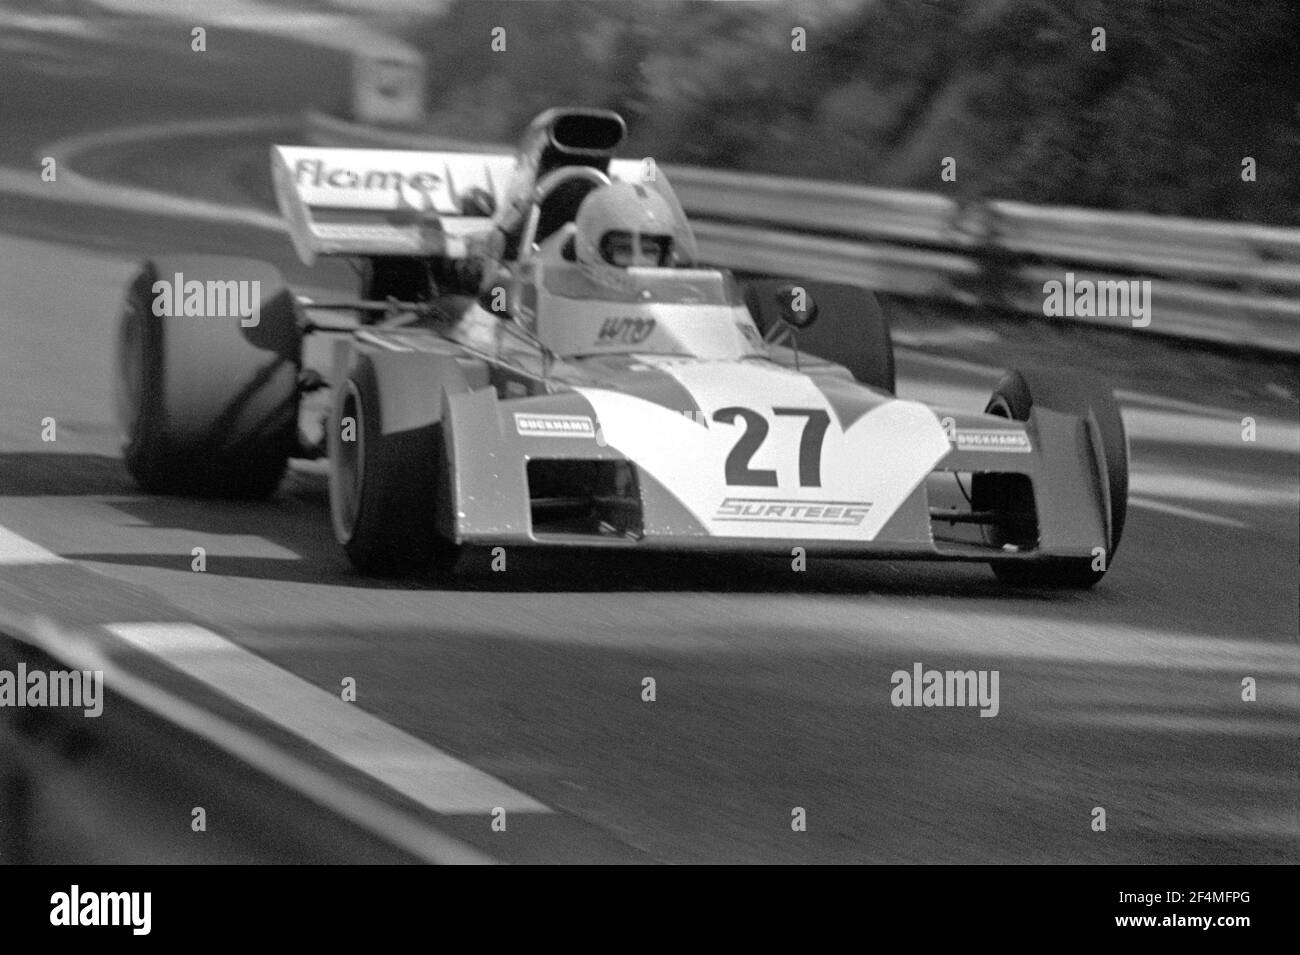 Tim SCHENKEN guida Surtees-Ford F1 auto a piena velocità durante il Gran Premio di Francia 1972, nel circuito di Charade vicino Clermont-Ferrand. Foto Stock